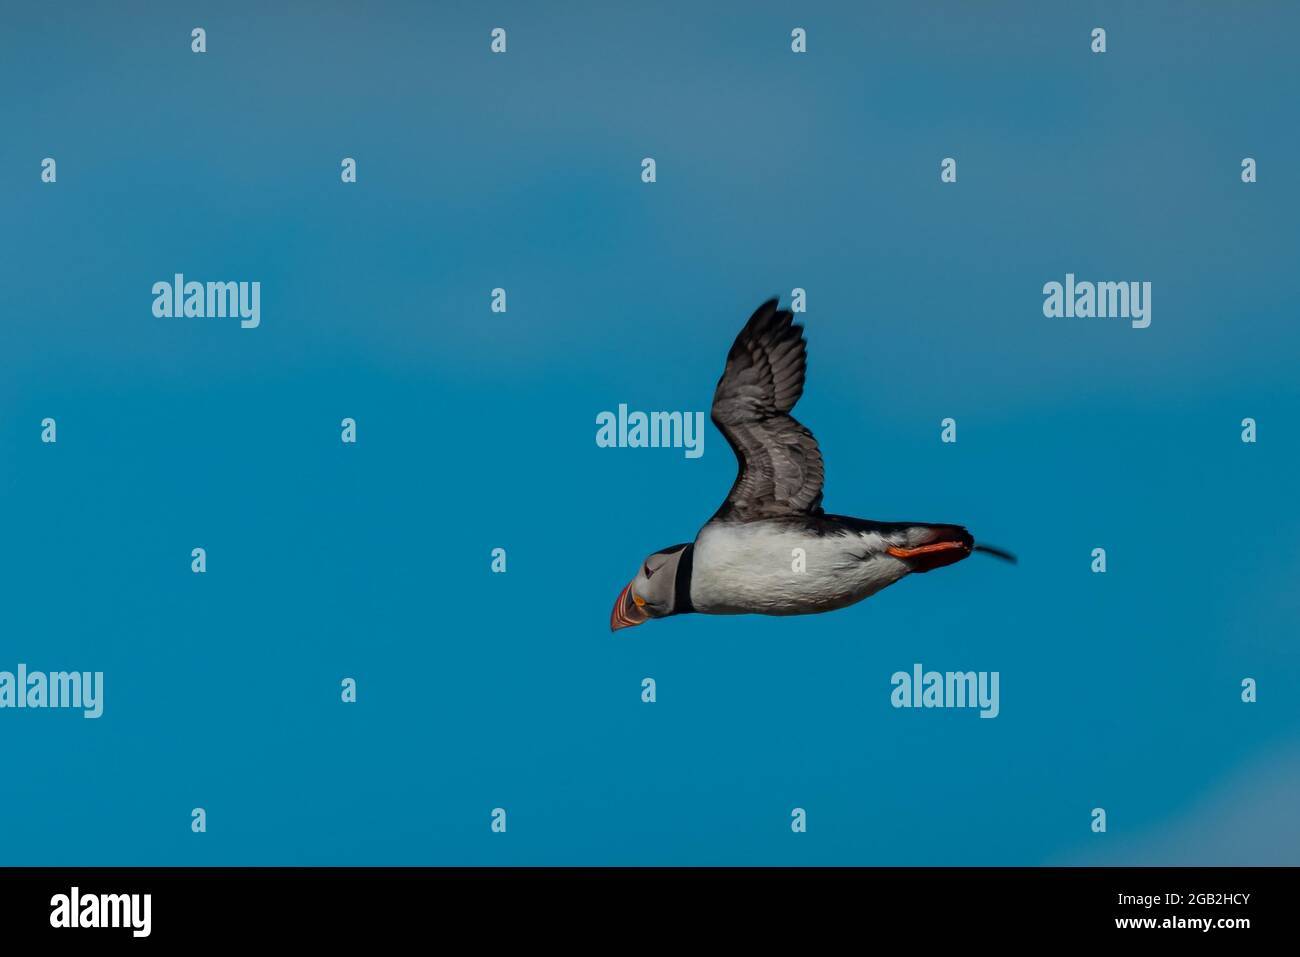 Un joli petit oiseau de macareux islandais dans un vol au-dessus d'un ciel bleu clair. Vue latérale d'un macareux volant. Banque D'Images